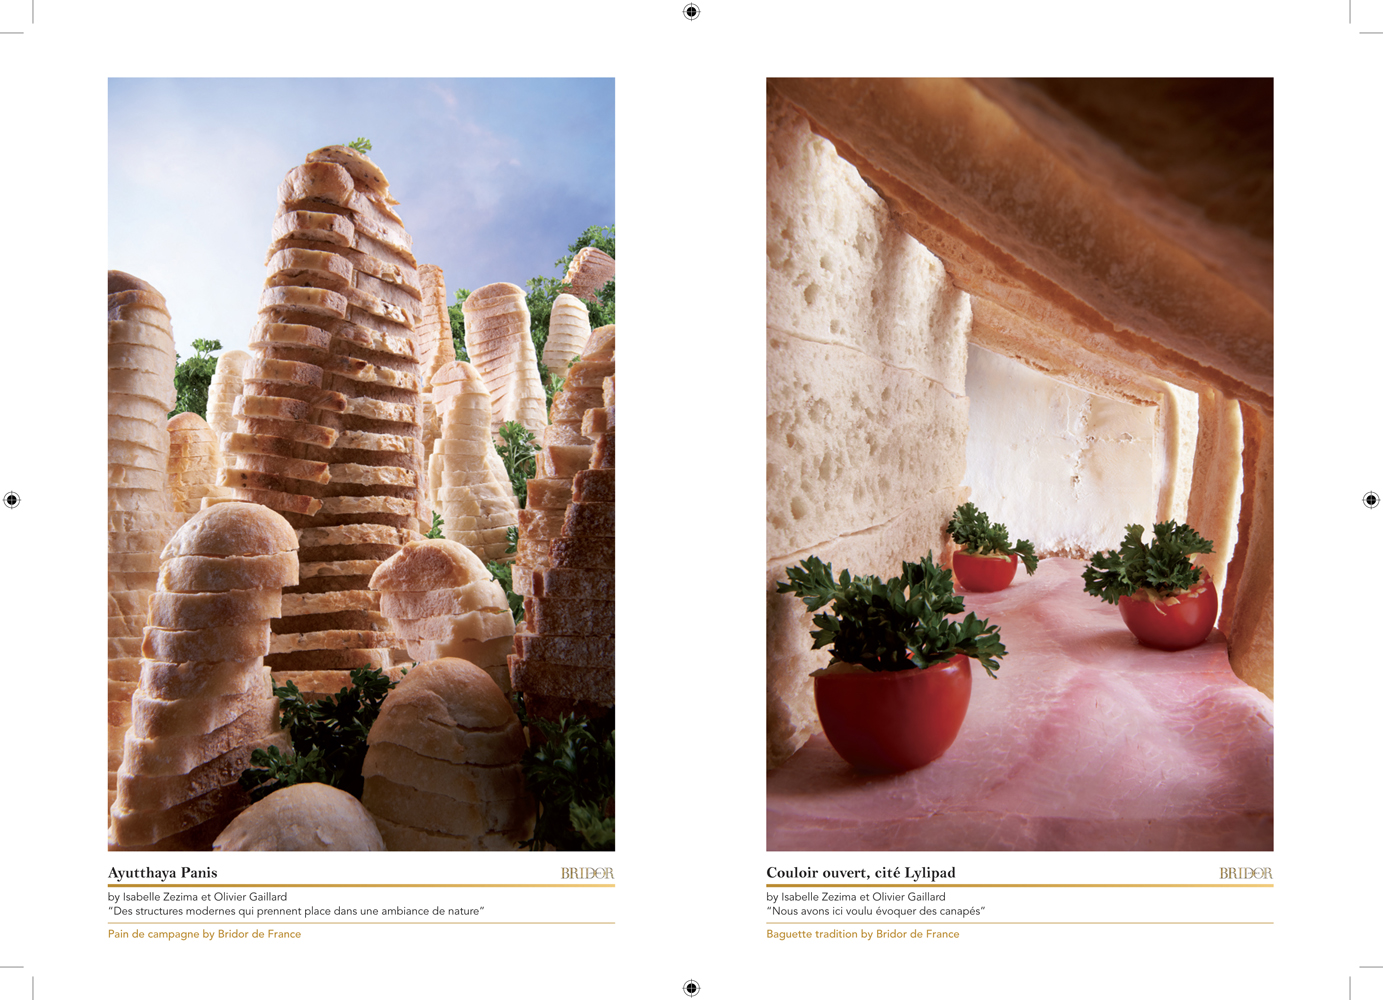 Livret en édition limitée réalisé par l'Agence Lucette pour accompagner l'exposition Bridor, en parallèle du festival de photographie culinaire 2012.